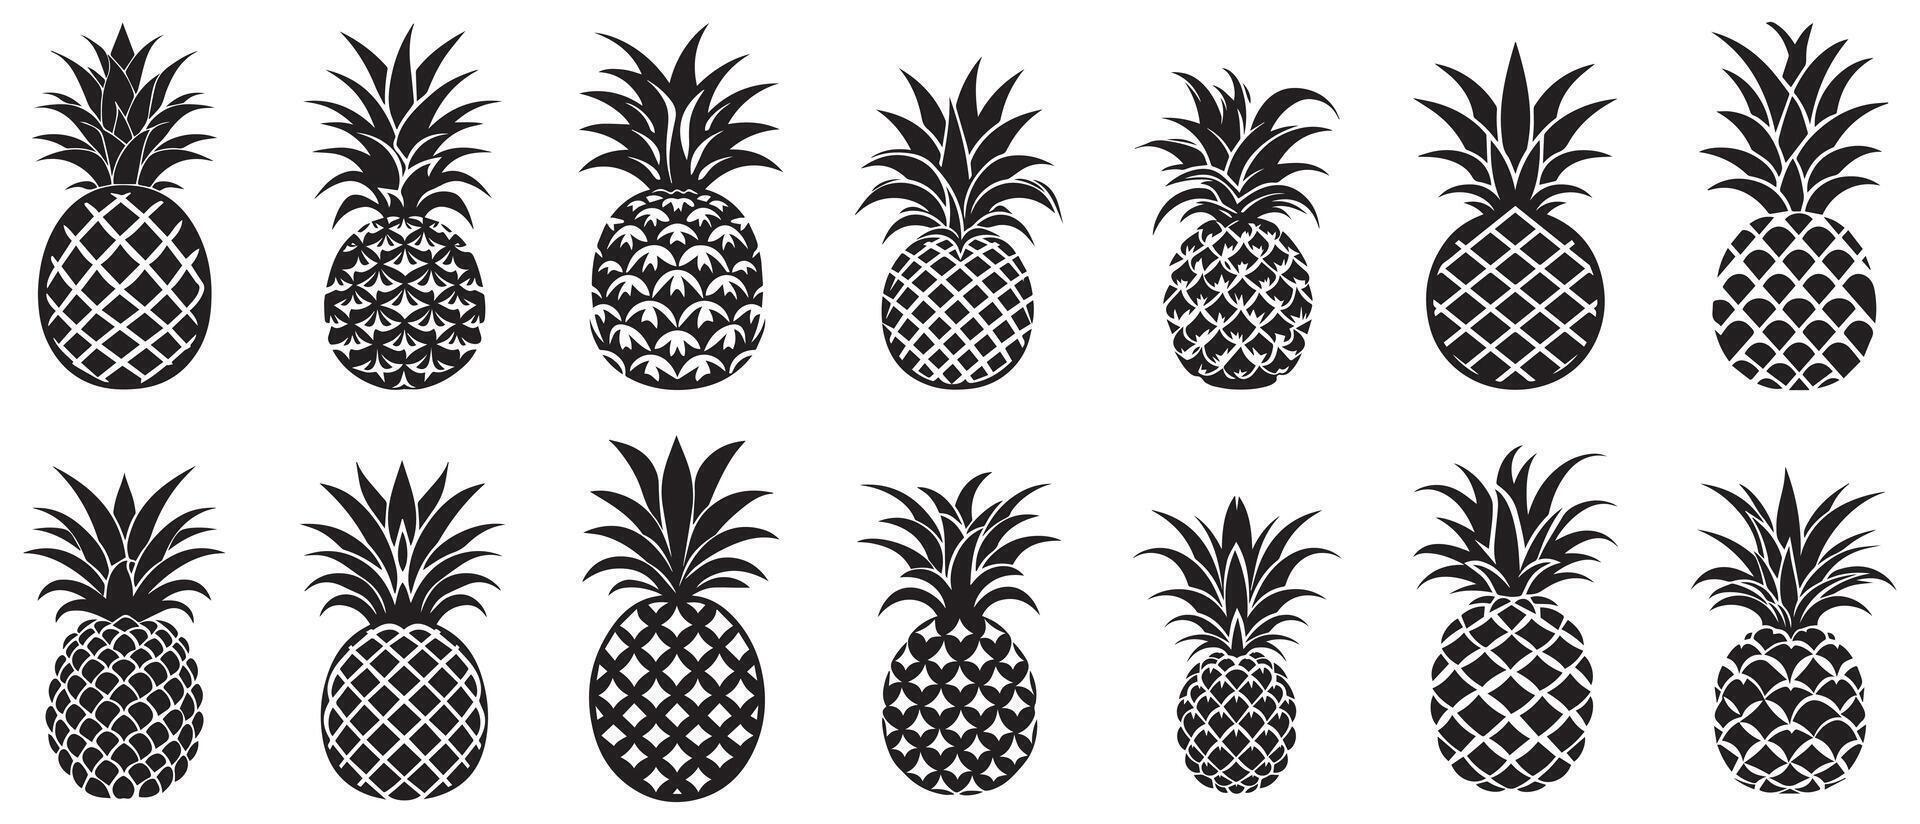 ananas natuurlijk voedsel icoon. versheid zoet kunst vector ontwerp.